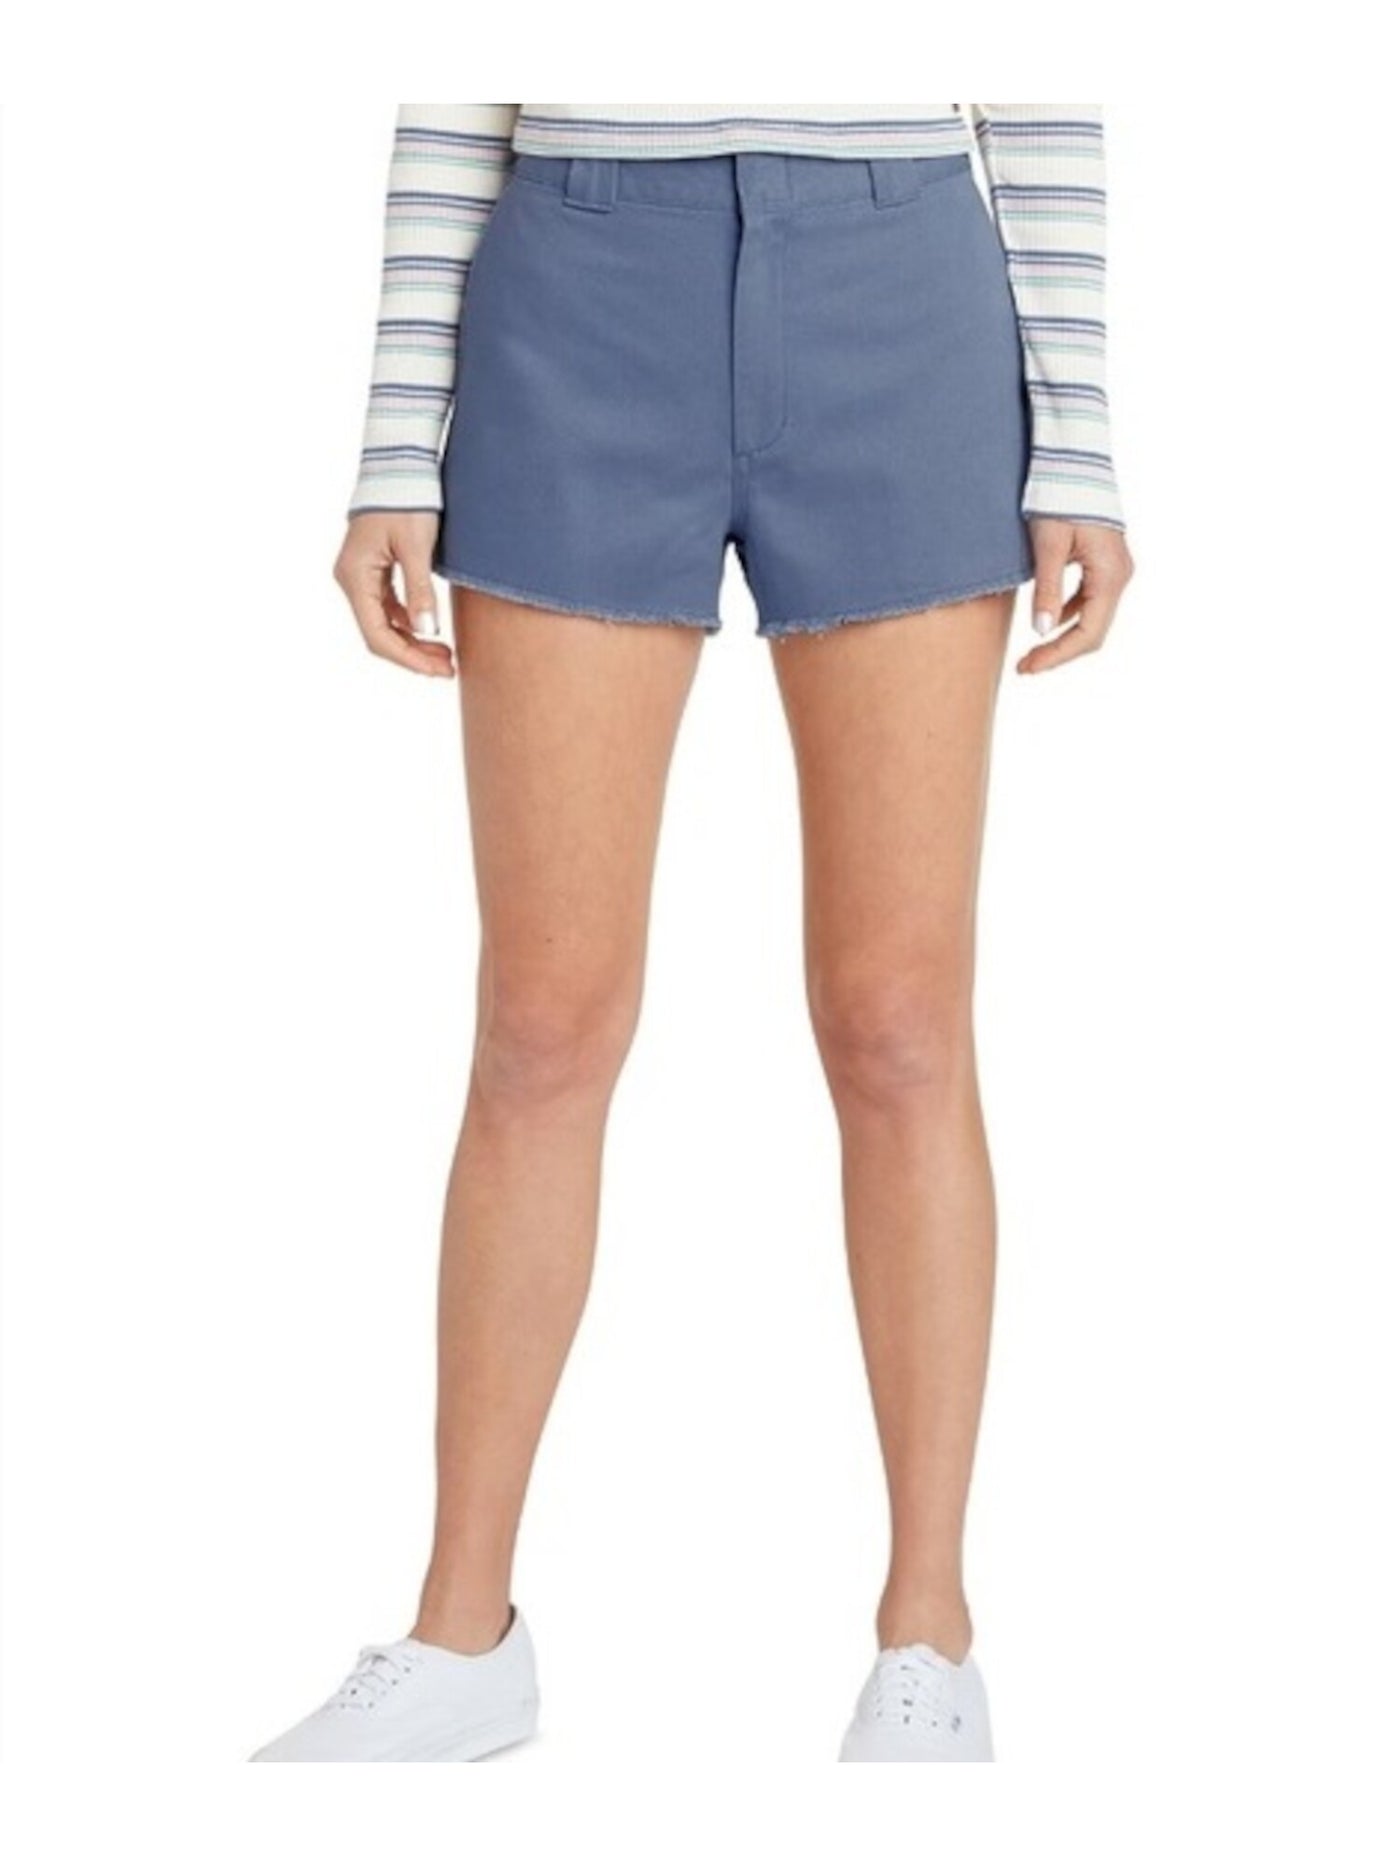 DICKIES Womens Navy Denim Frayed Pocketed Zippered High Waist Shorts Juniors 7\28